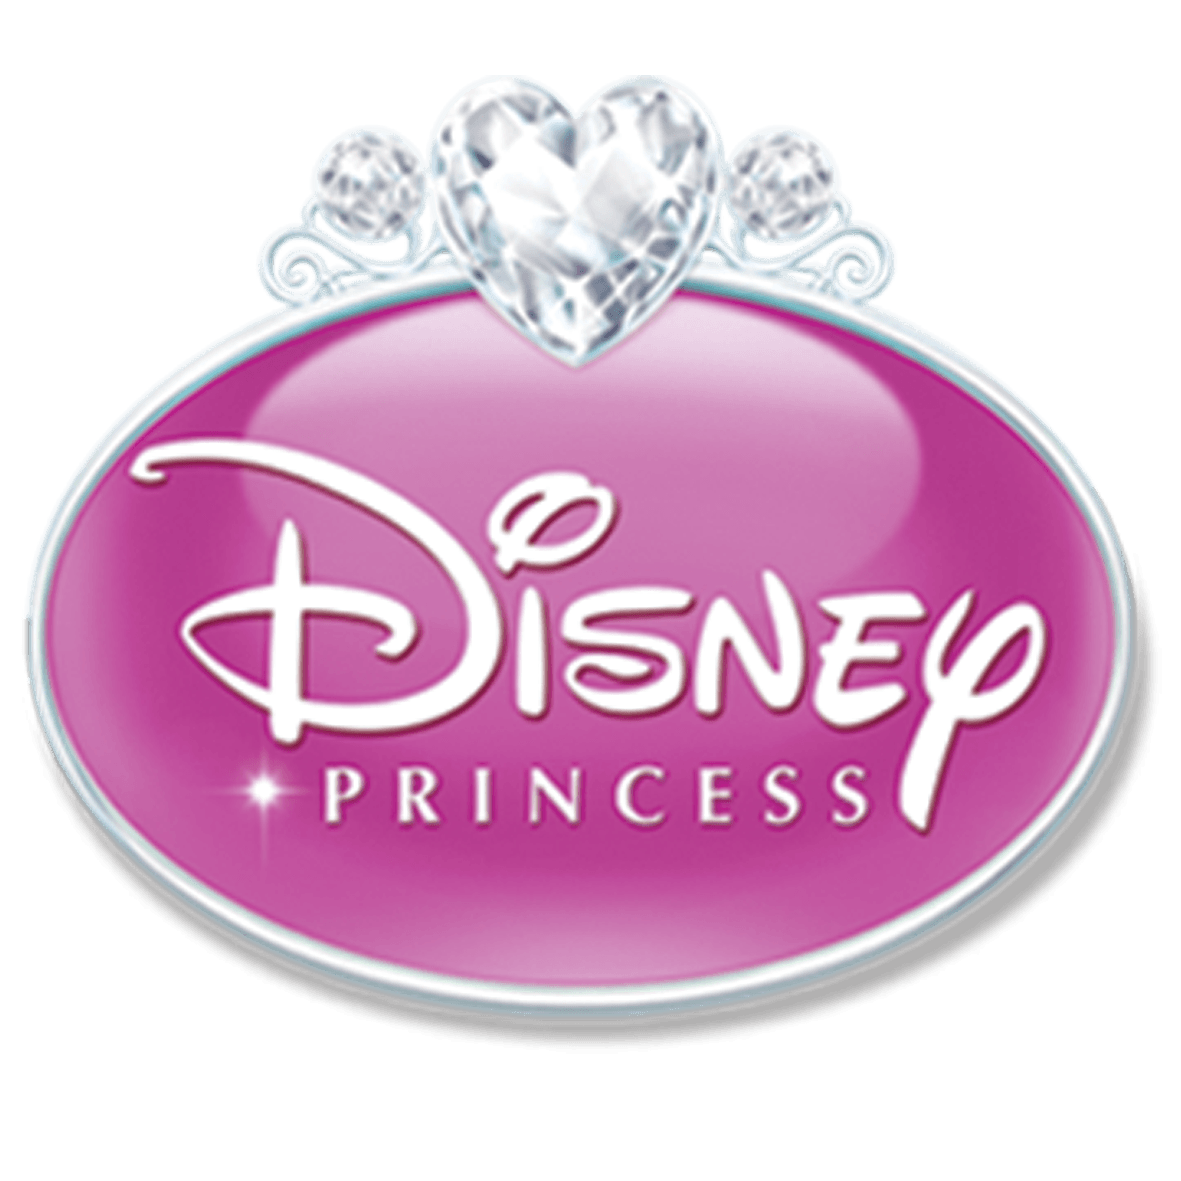 New Disney Princess Logo - Disney Princess | Logopedia | FANDOM powered by Wikia